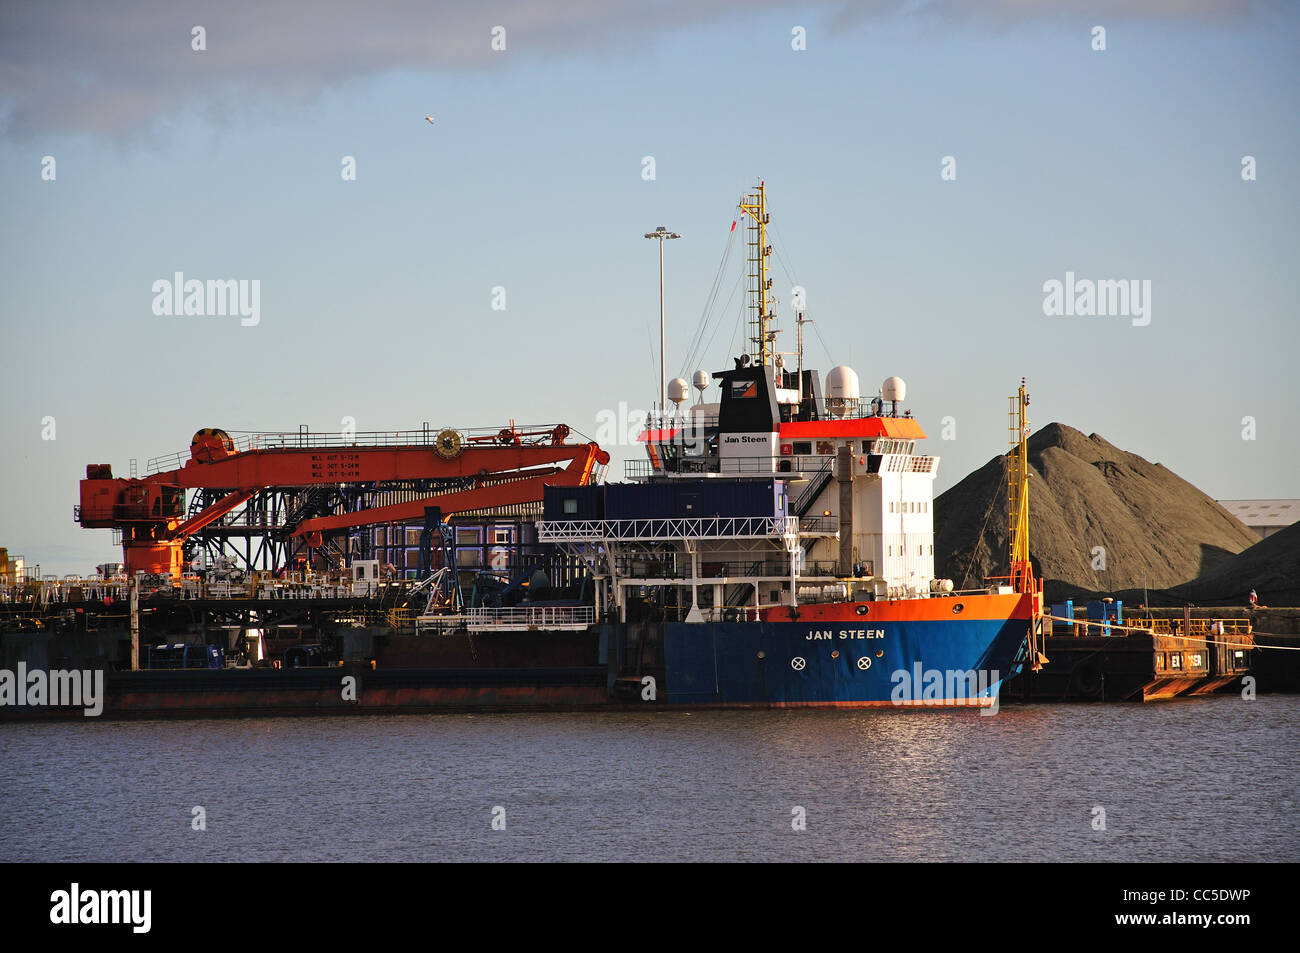 Drague 'Jan Steen' navire à Sunderland Docks, Sunderland, Tyne et Wear, Angleterre, Royaume-Uni Banque D'Images